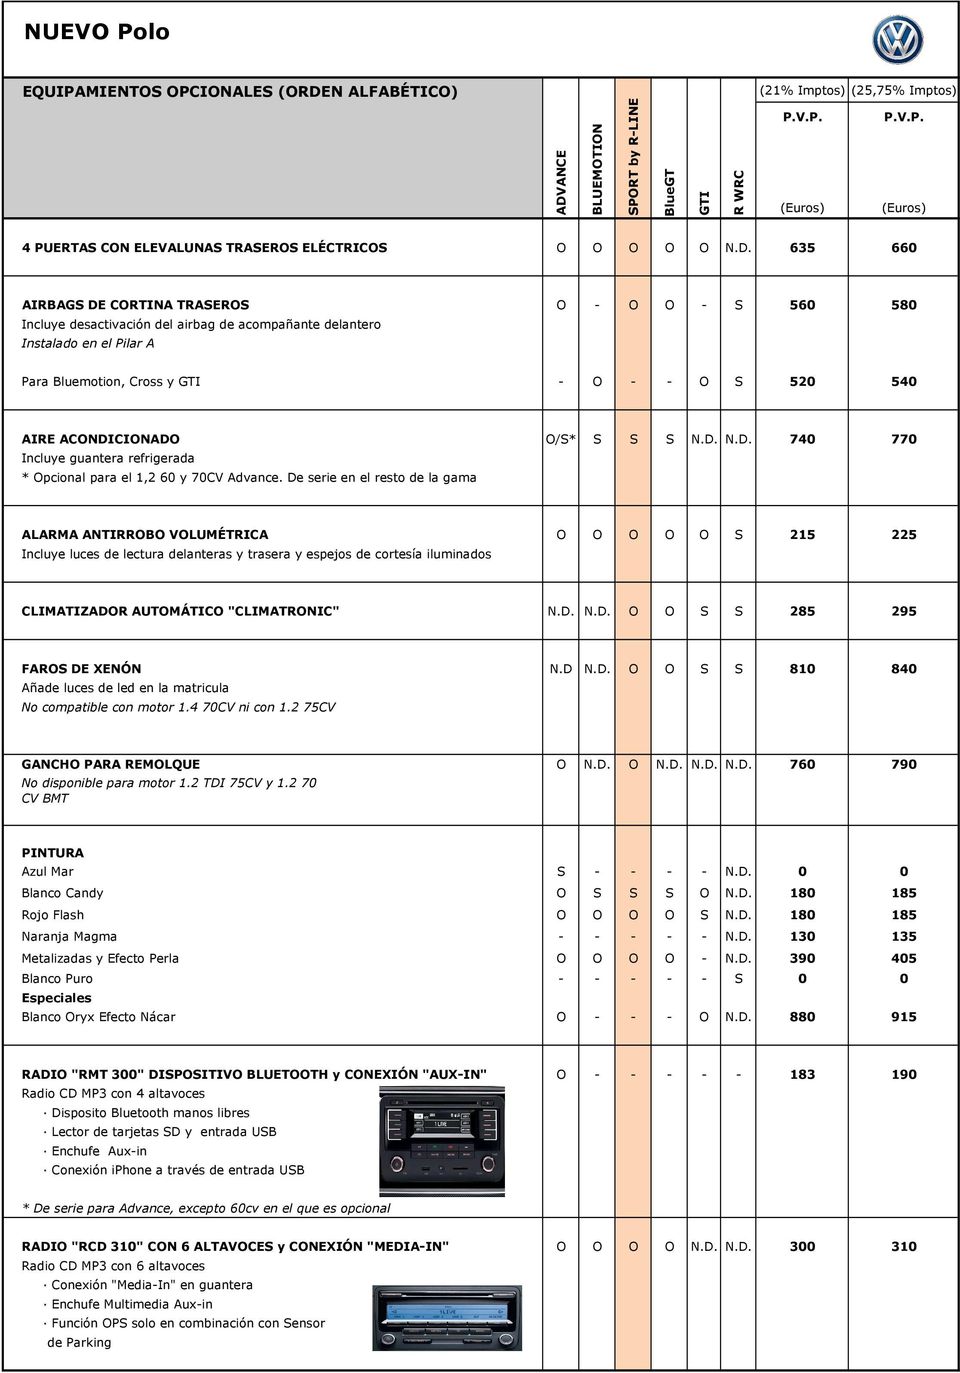 ACONDICIONADO O/S* S S S N.D. N.D. 740 770 Incluye guantera refrigerada * Opcional para el 1,2 60 y 70CV Advance.